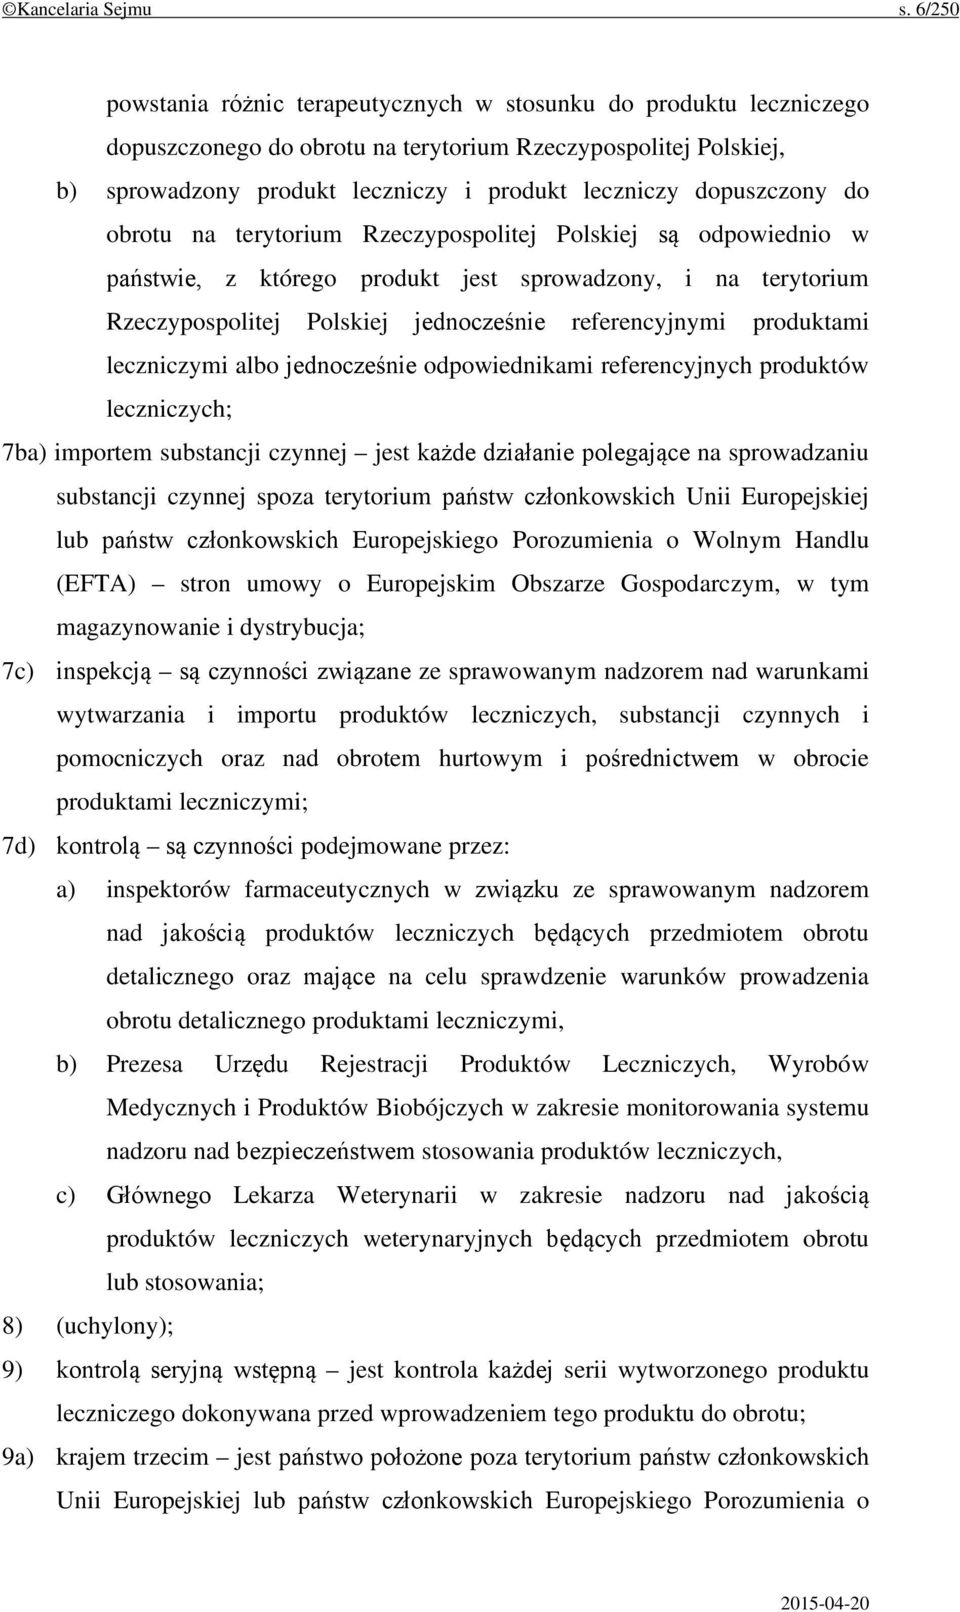 dopuszczony do obrotu na terytorium Rzeczypospolitej Polskiej są odpowiednio w państwie, z którego produkt jest sprowadzony, i na terytorium Rzeczypospolitej Polskiej jednocześnie referencyjnymi